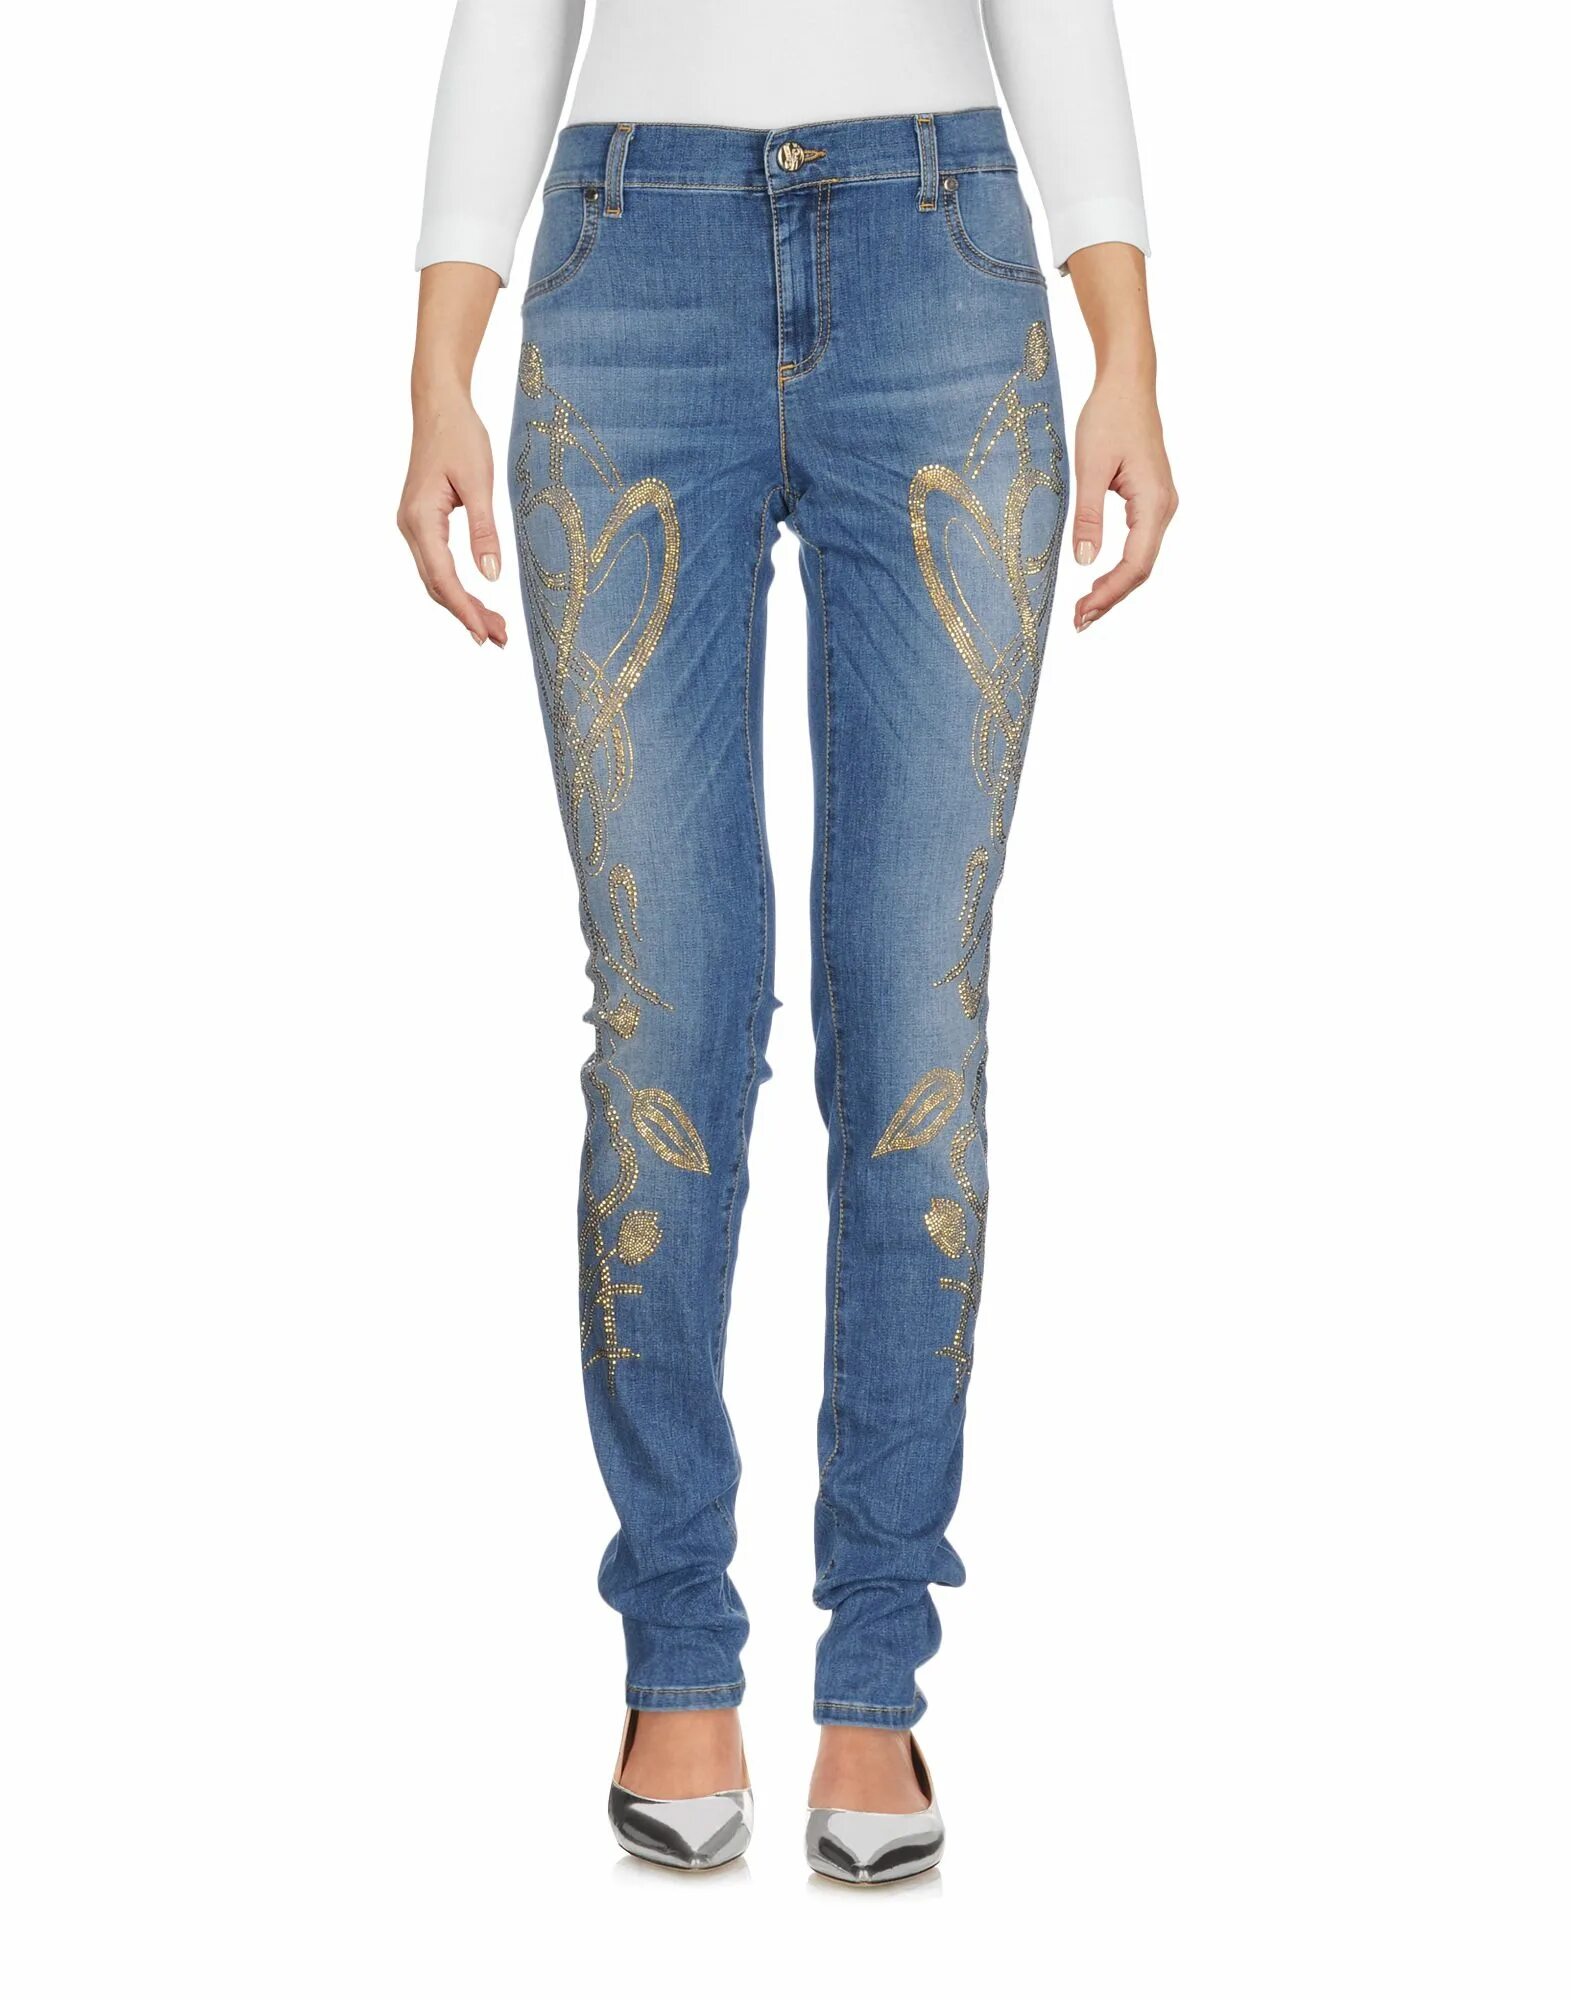 Джинсы collection. Versace Classic Jeans. Джинсы в Коллекциях Версаче. Версаче женские джинсы 2023. Версаче джинсы осень 2023.